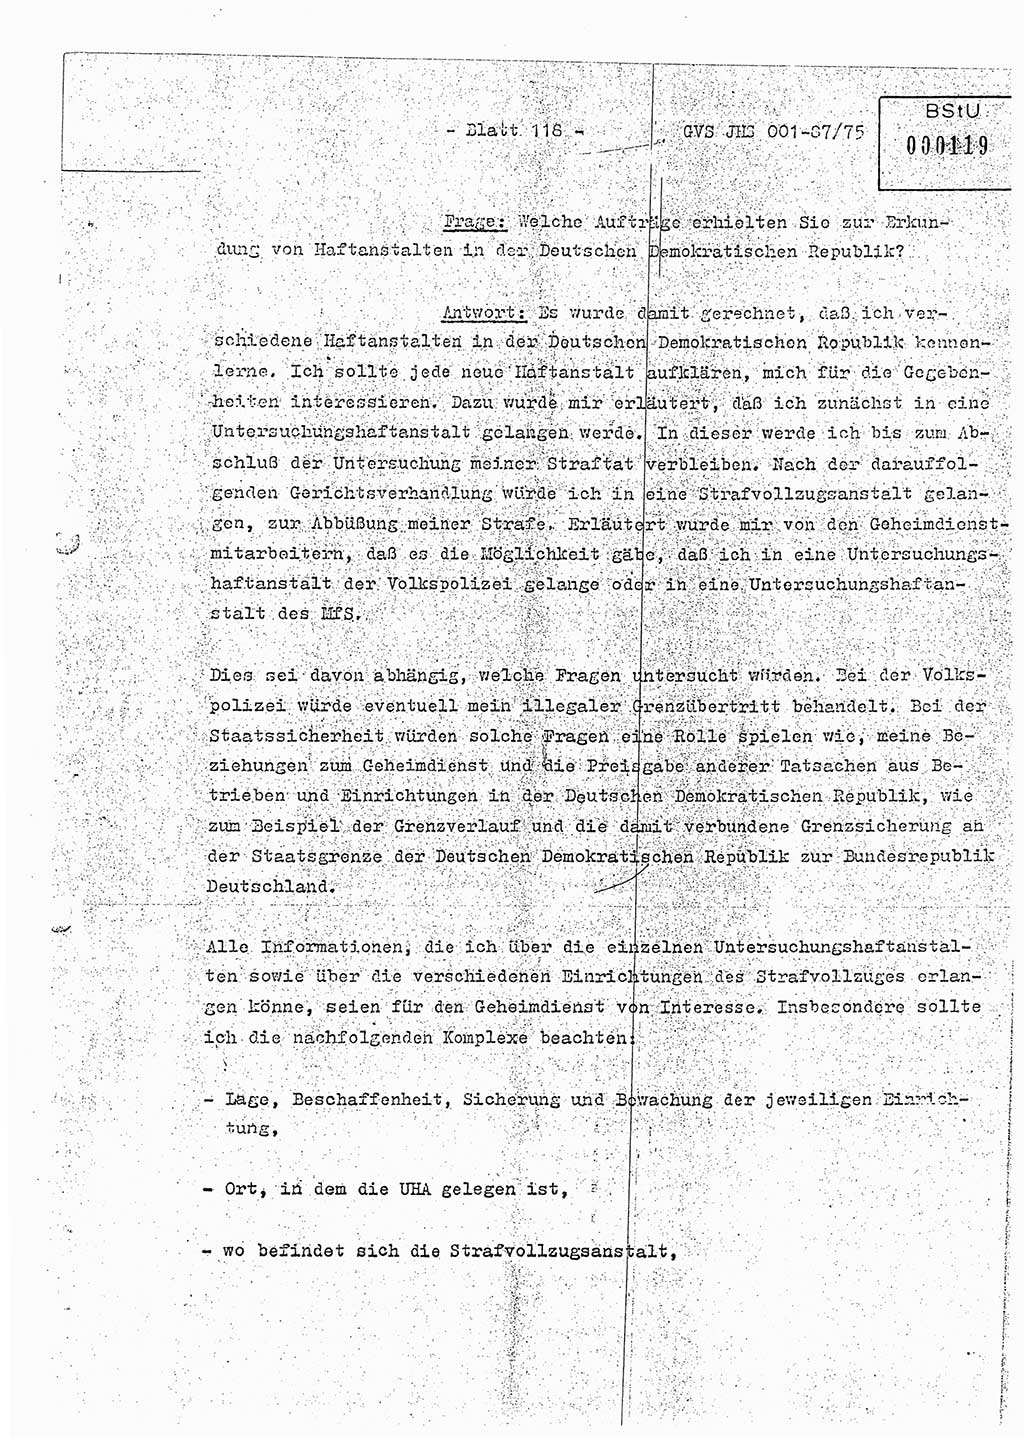 Diplomarbeit Hauptmann Volkmar Heinz (Abt. ⅩⅣ), Oberleutnant Lothar Rüdiger (BV Lpz. Abt. Ⅺ), Ministerium für Staatssicherheit (MfS) [Deutsche Demokratische Republik (DDR)], Juristische Hochschule (JHS), Geheime Verschlußsache (GVS) o001-87/75, Potsdam 1975, Seite 118 (Dipl.-Arb. MfS DDR JHS GVS o001-87/75 1975, S. 118)